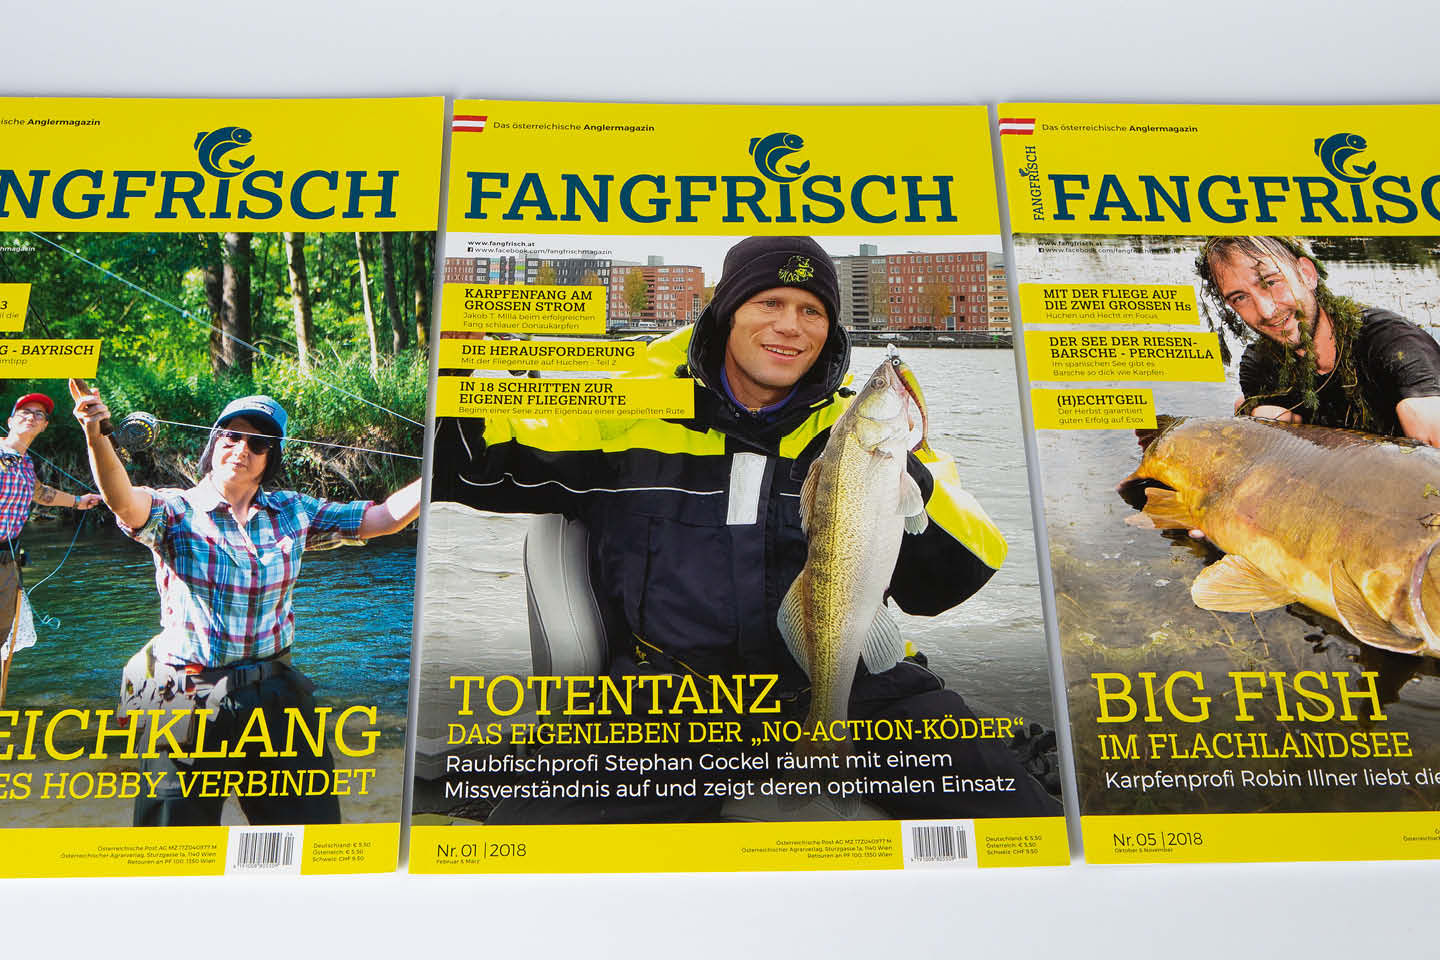 Fangfisch Zeitschrift Coverdesign